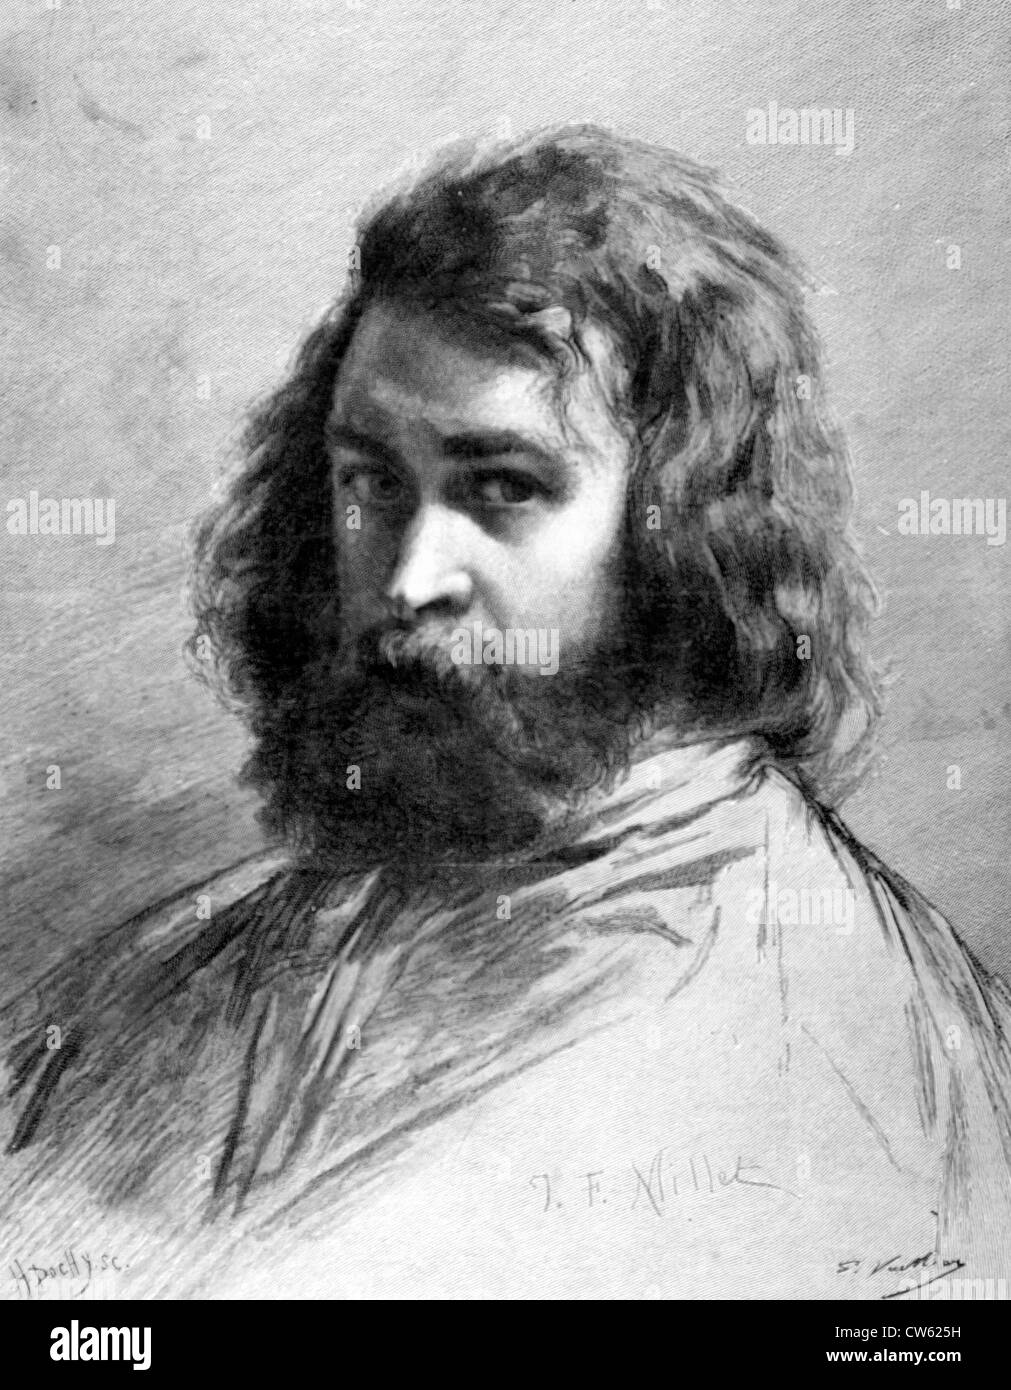 Autoritratto di pittore Jean-François Millet, in "Le Monde illustré", 5-21-1887 Foto Stock